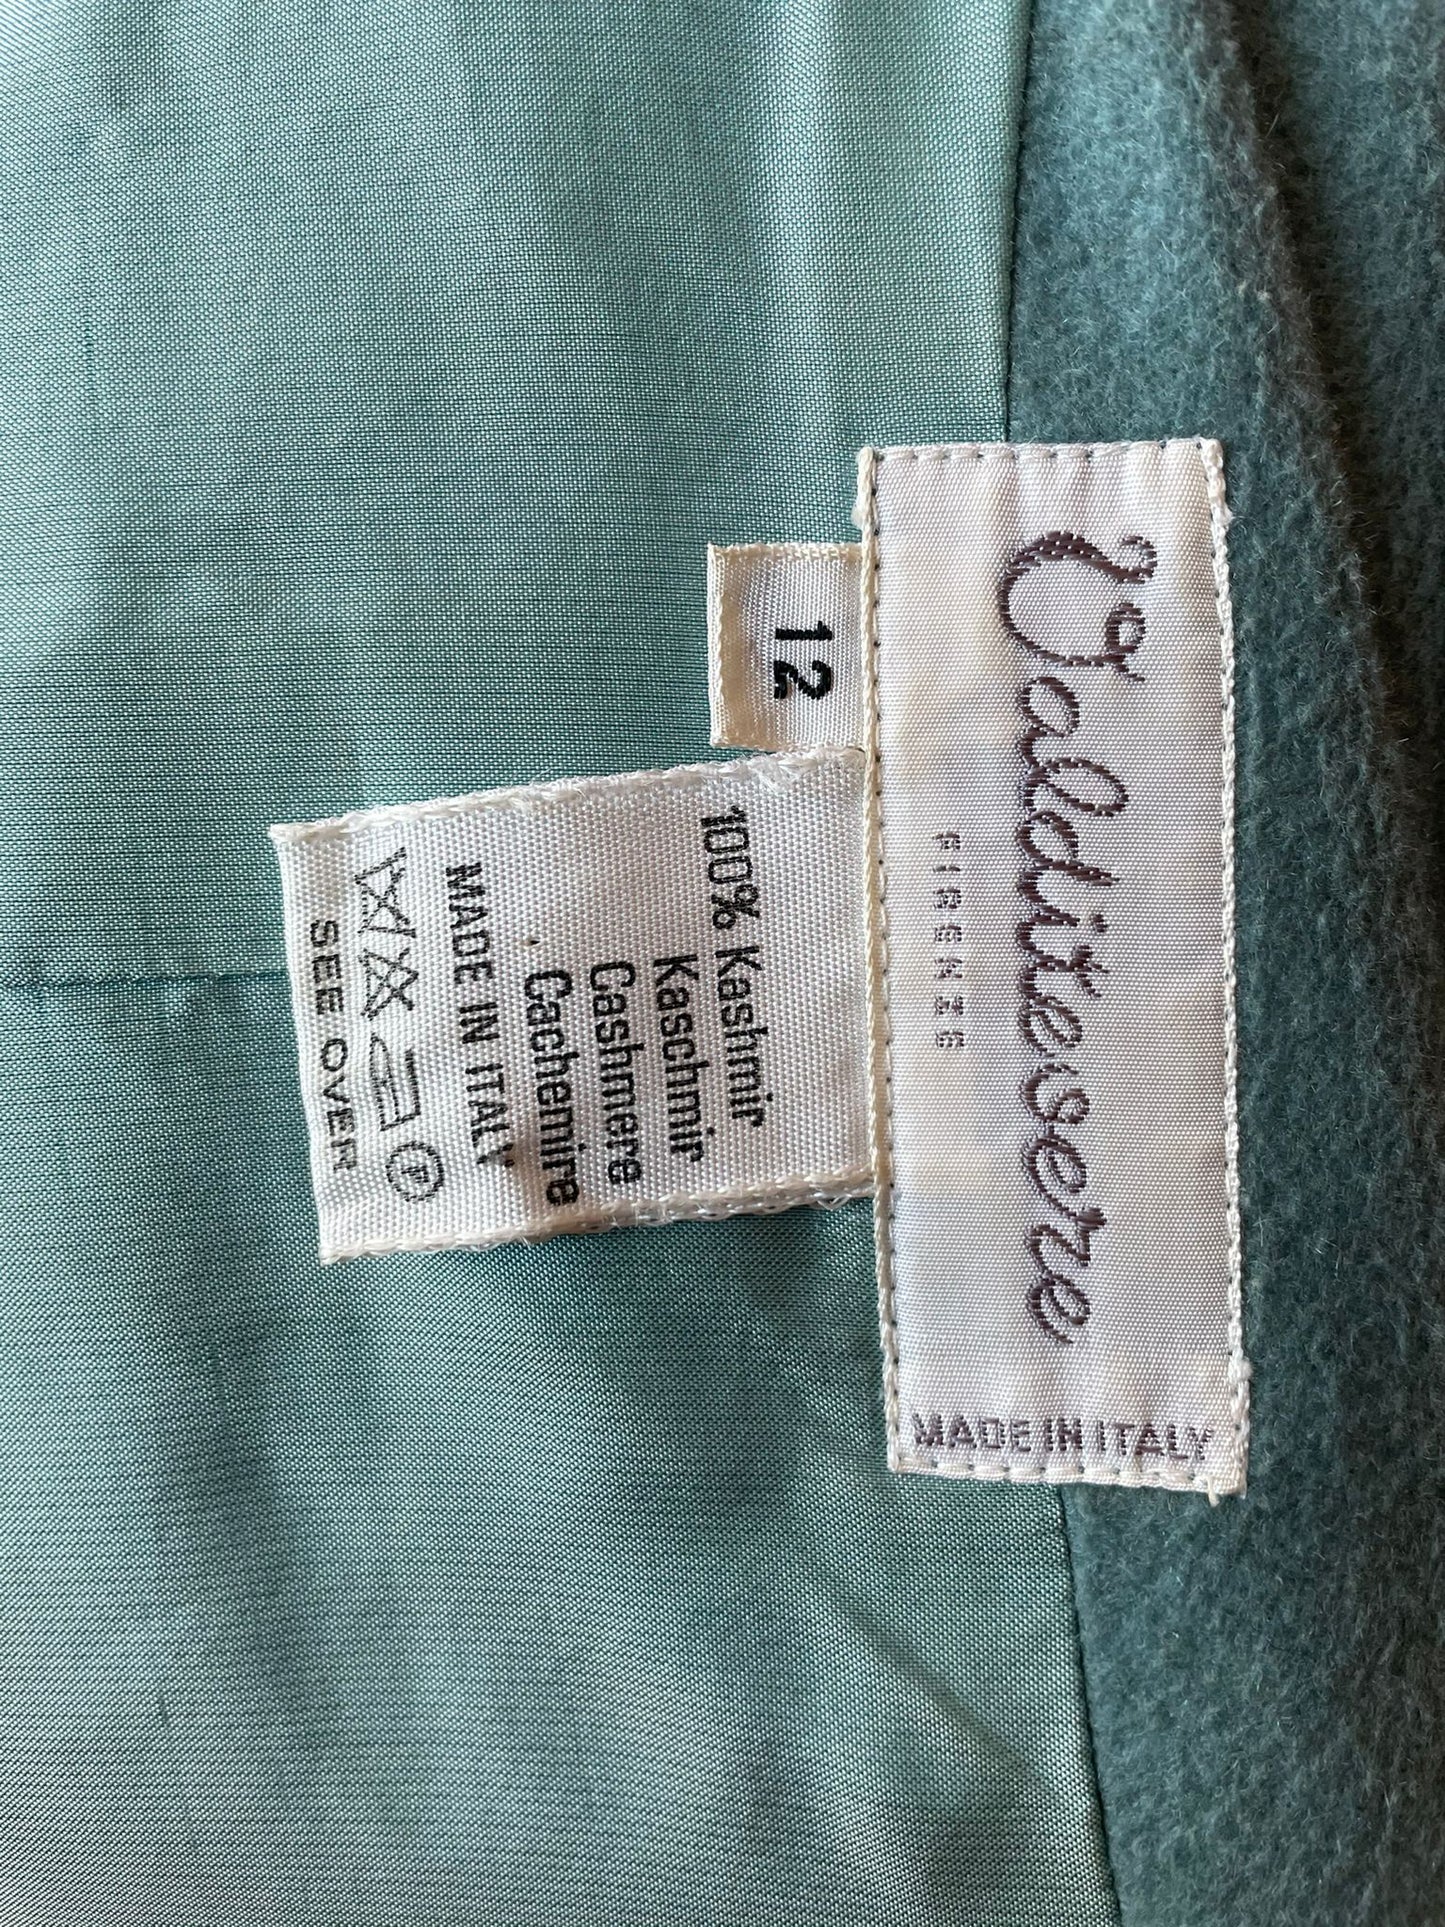 1980s cashmere suit